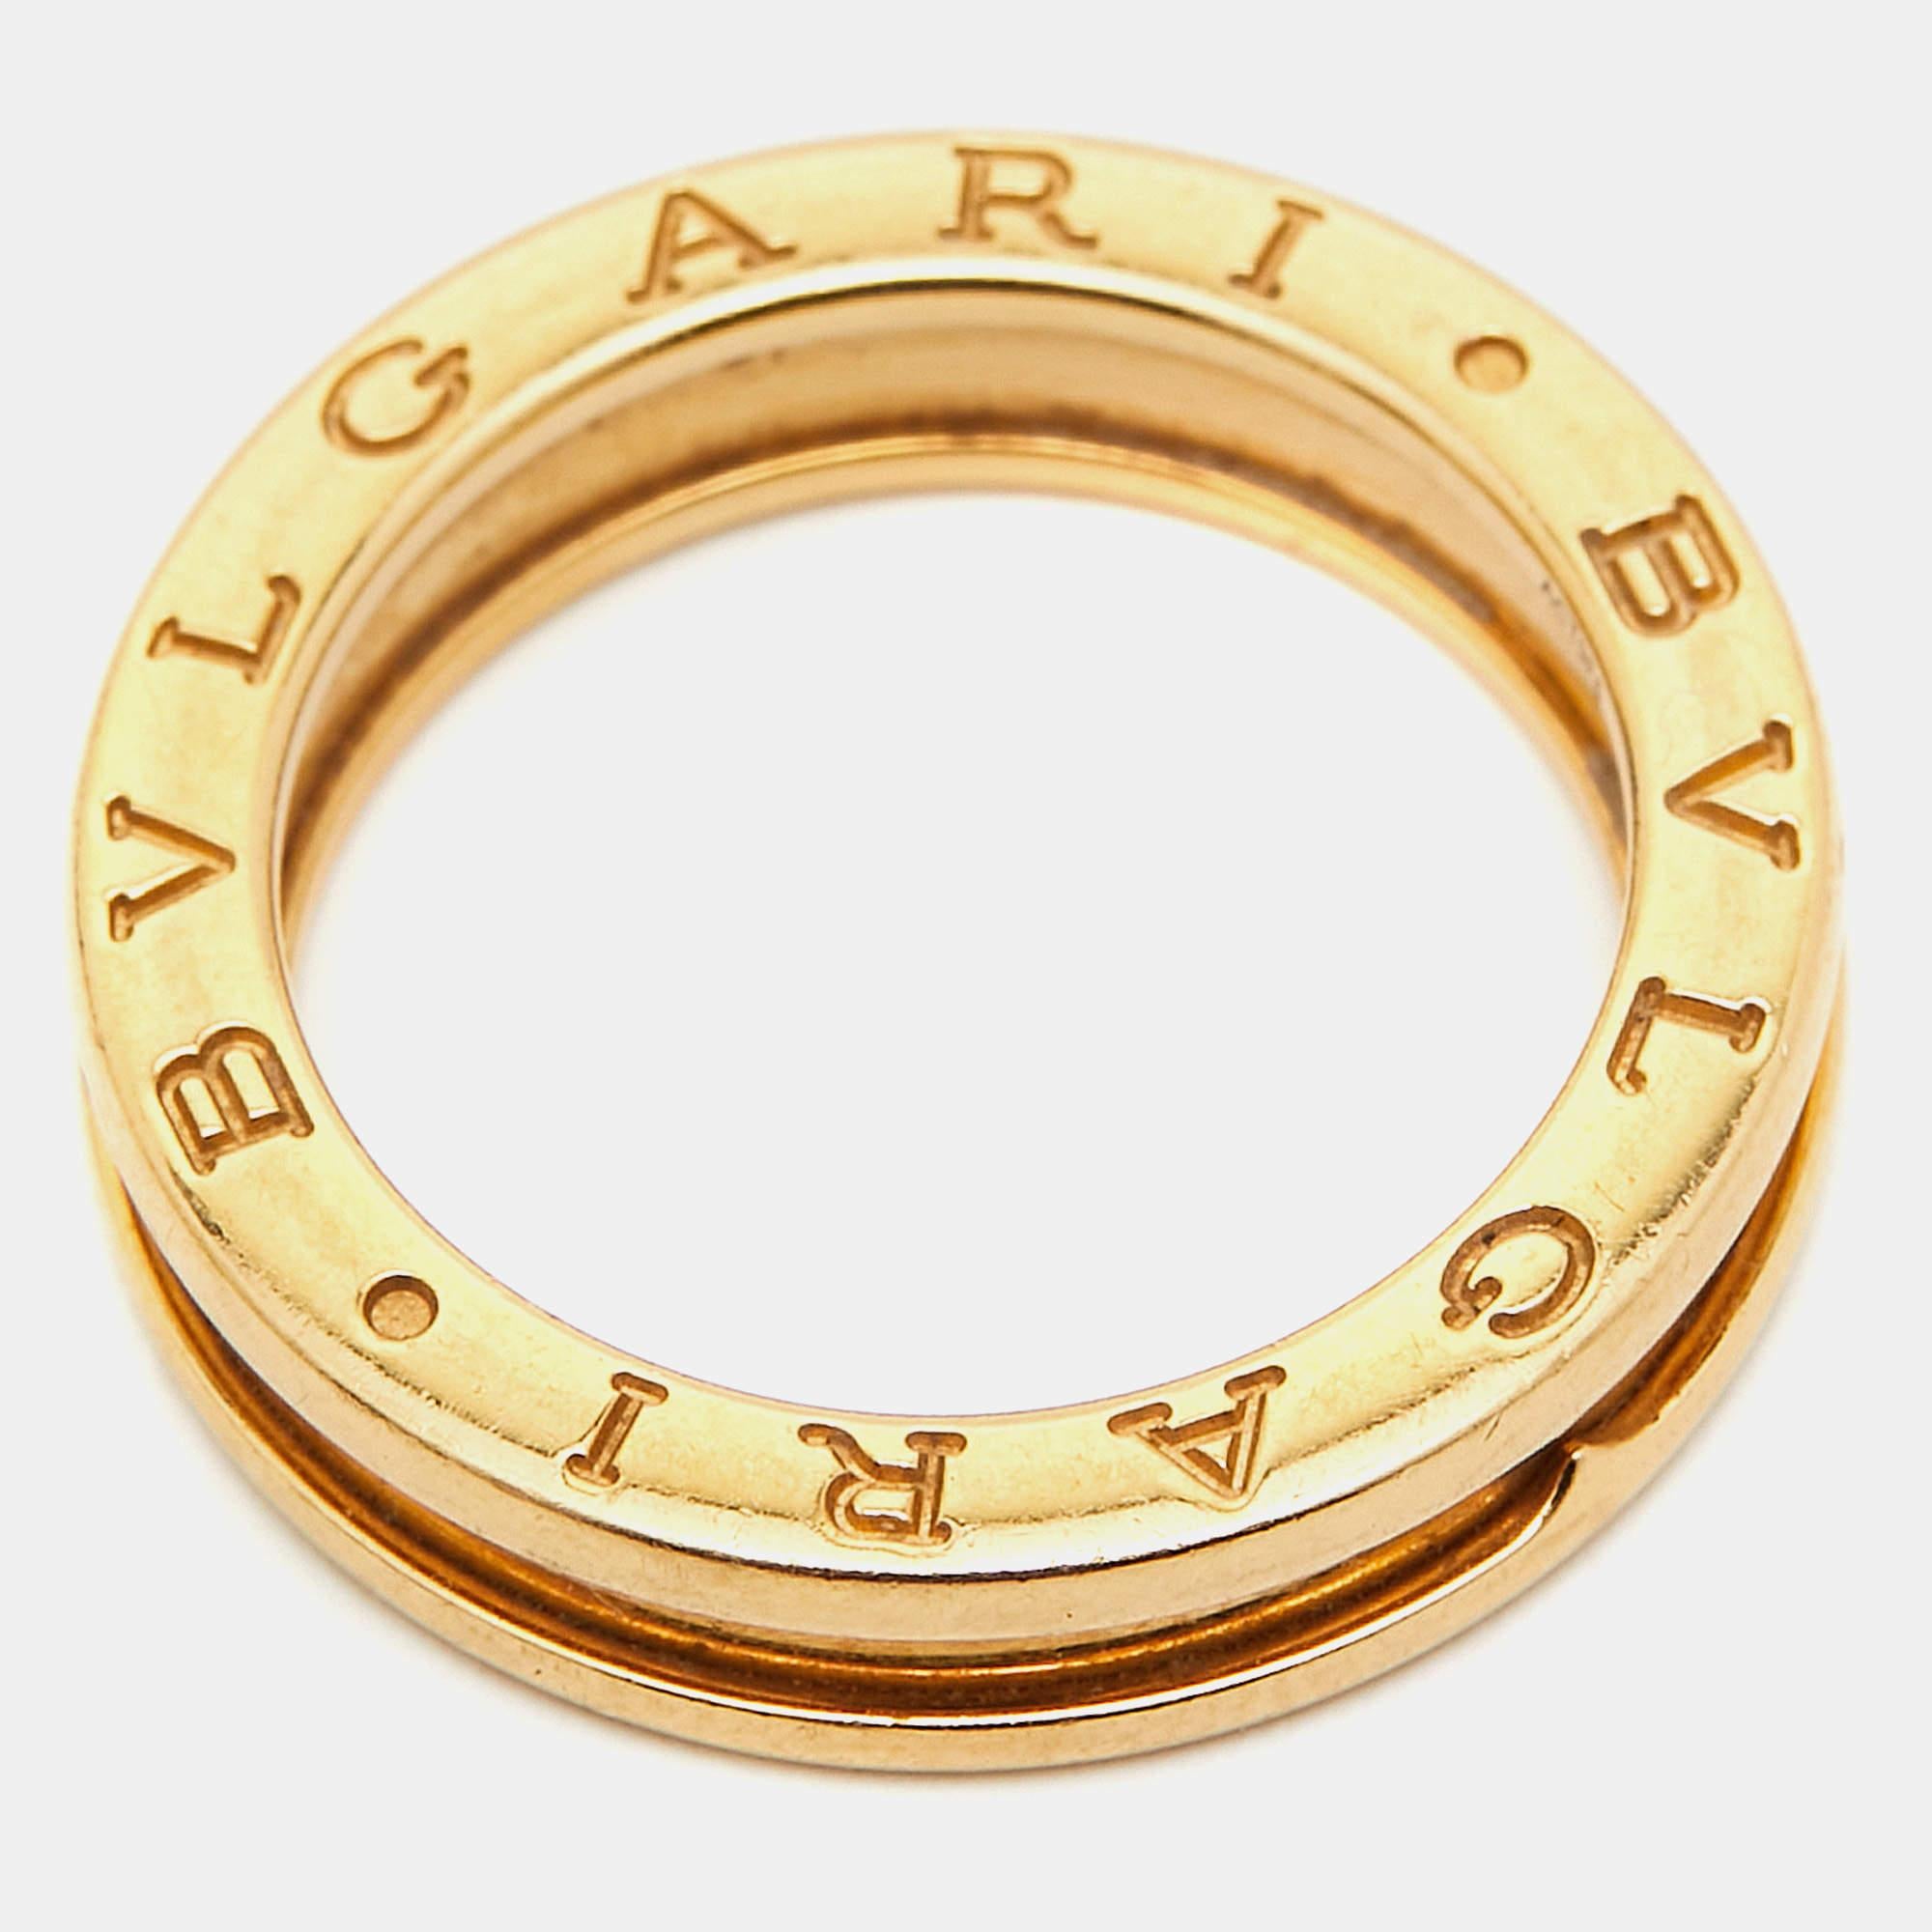 Bvlgari B.Zero1 1-Band 18k Yellow Gold Ring Size 55 In Fair Condition For Sale In Dubai, Al Qouz 2